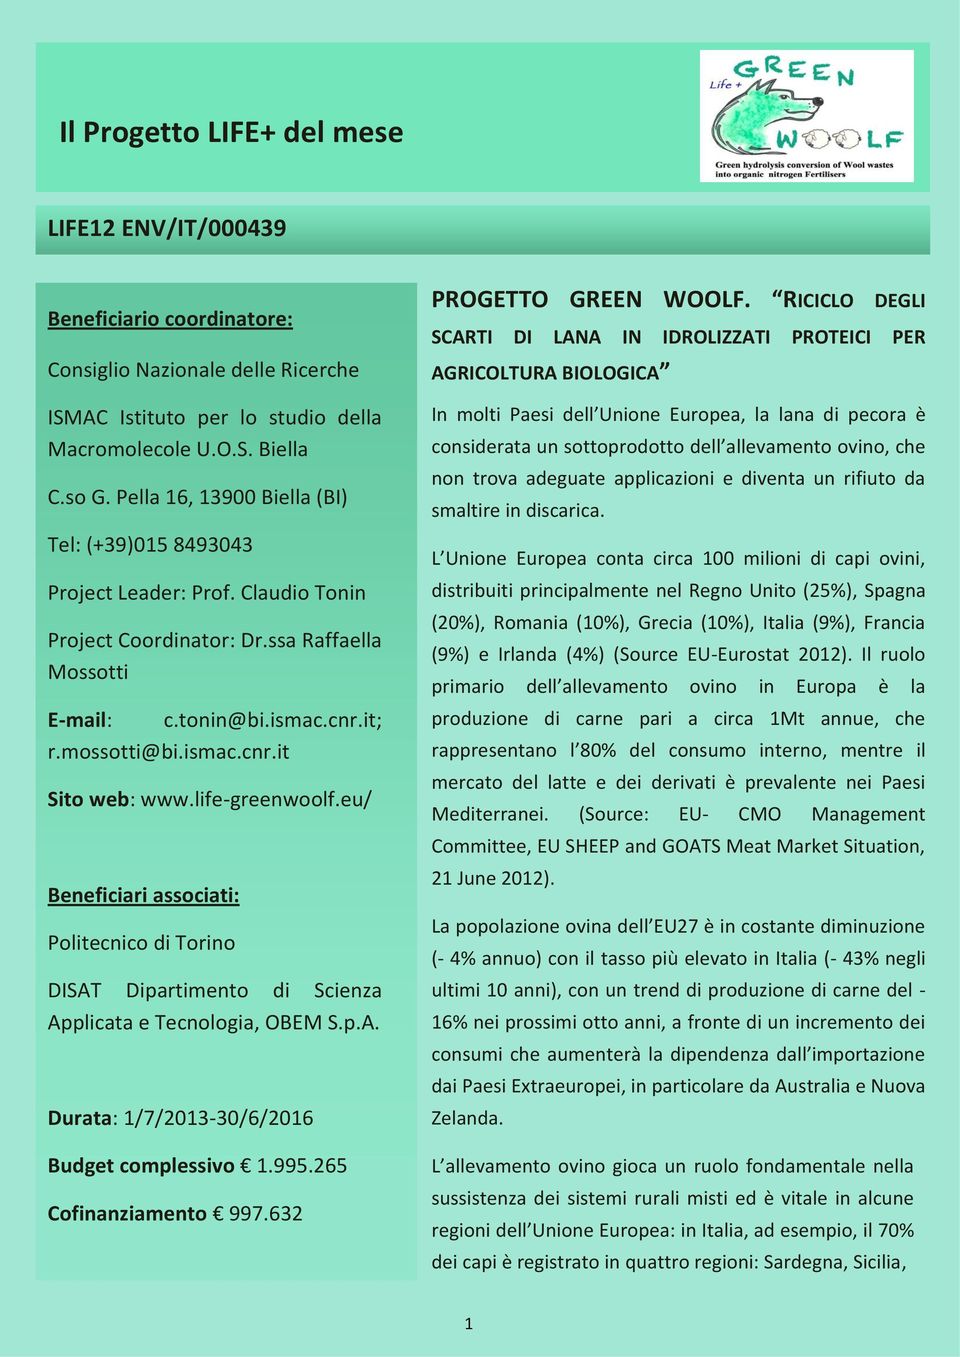 life-greenwoolf.eu/ Beneficiari associati: Politecnico di Torino DISAT Dipartimento di Scienza Applicata e Tecnologia, OBEM S.p.A. Durata: 1/7/2013-30/6/2016 Budget complessivo 1.995.